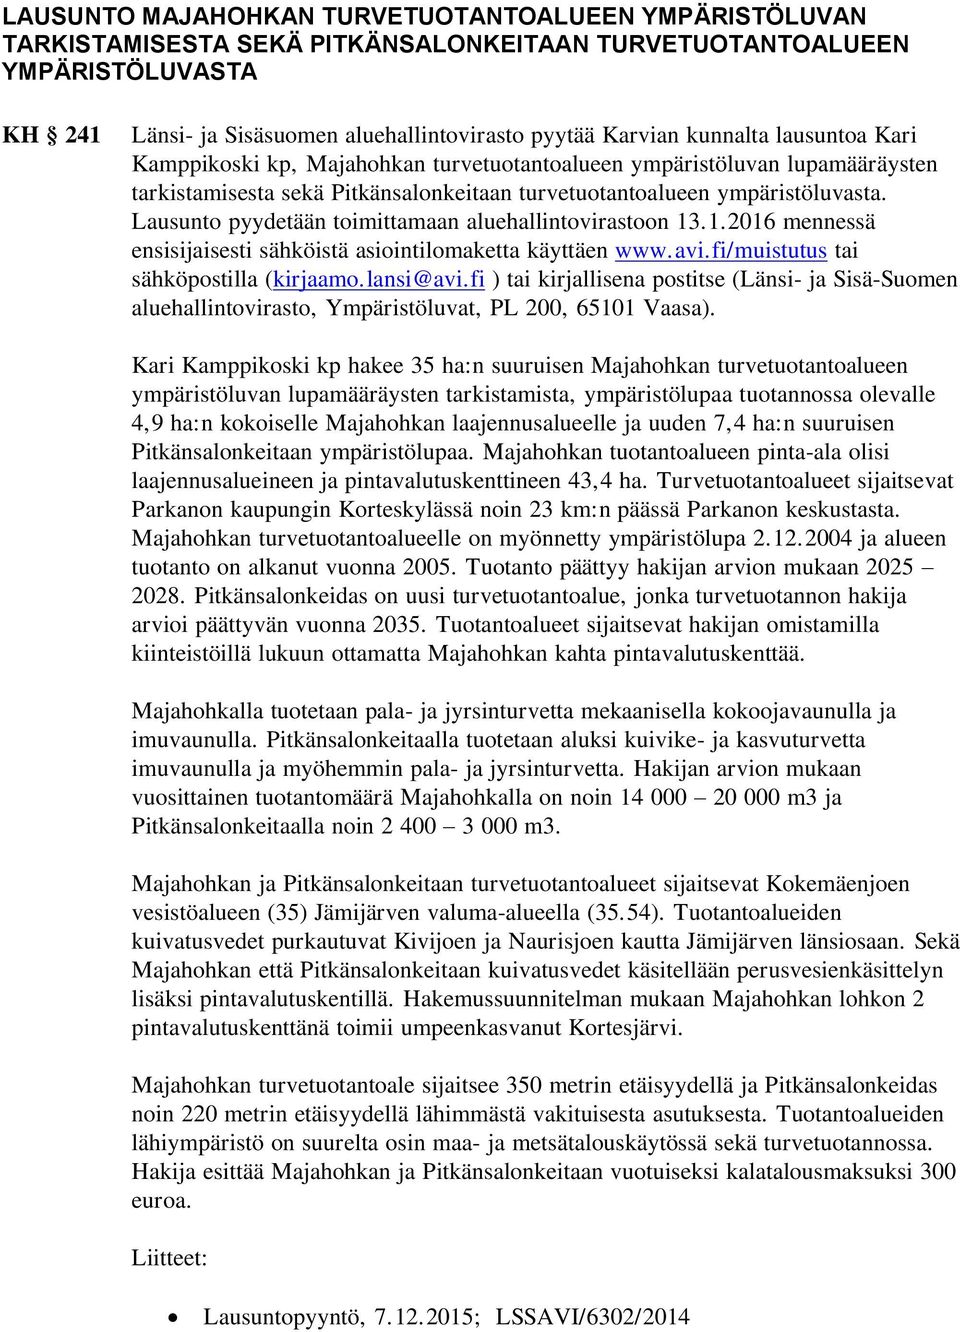 Lausunto pyydetään toimittamaan aluehallintovirastoon 13.1.2016 mennessä ensisijaisesti sähköistä asiointilomaketta käyttäen www.avi.fi/muistutus tai sähköpostilla (kirjaamo.lansi@avi.